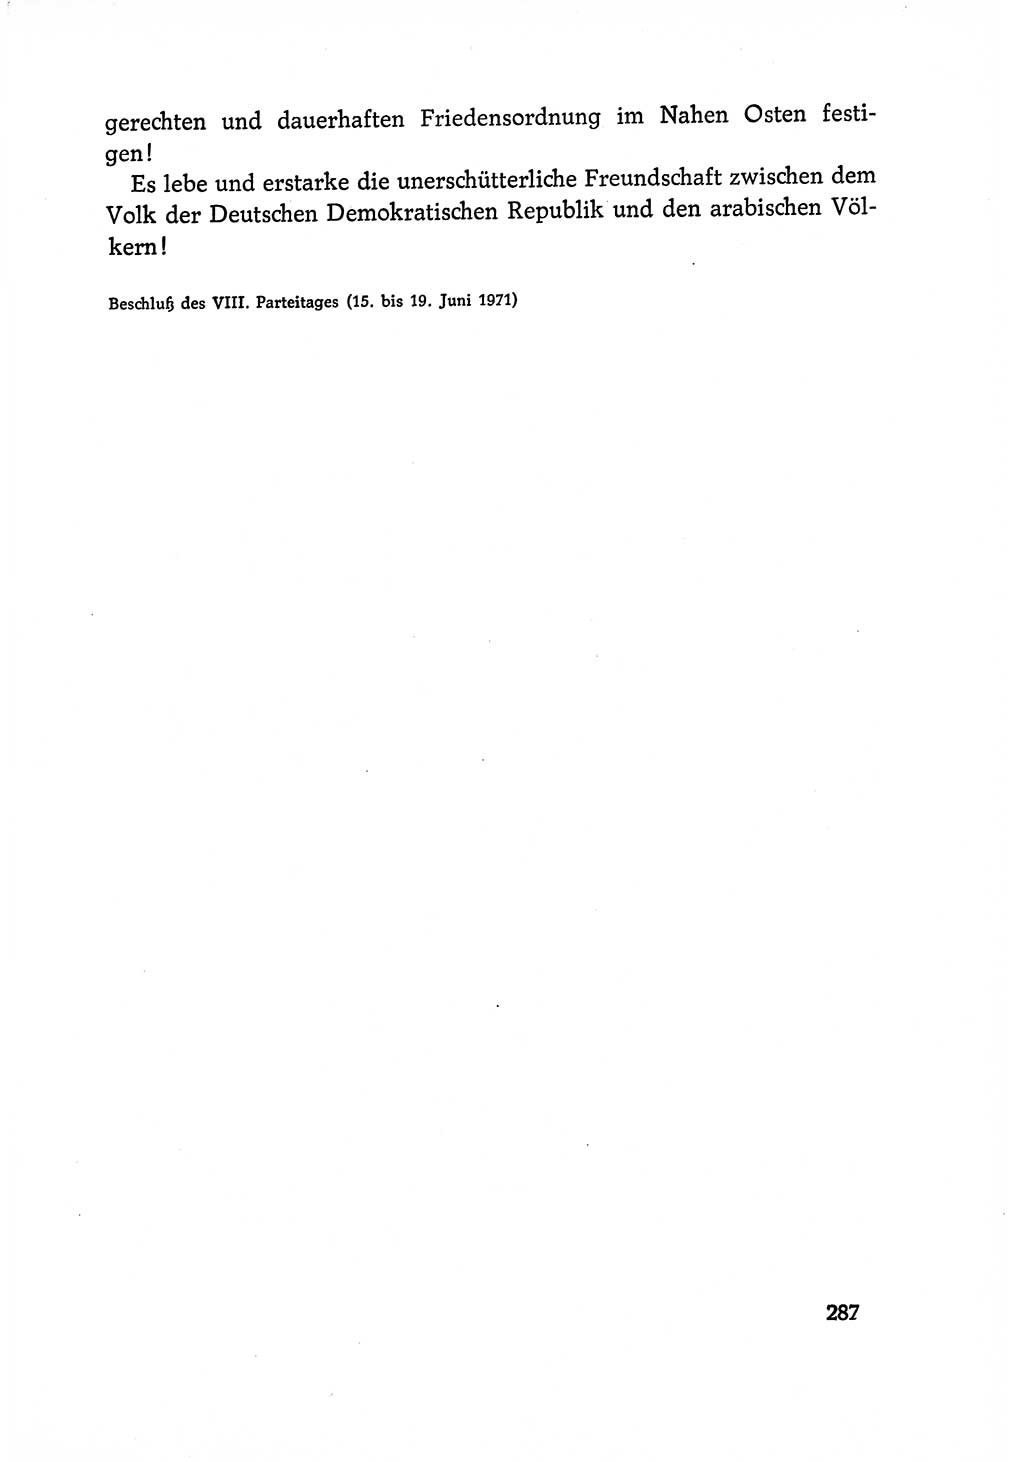 Dokumente der Sozialistischen Einheitspartei Deutschlands (SED) [Deutsche Demokratische Republik (DDR)] 1970-1971, Seite 287 (Dok. SED DDR 1970-1971, S. 287)